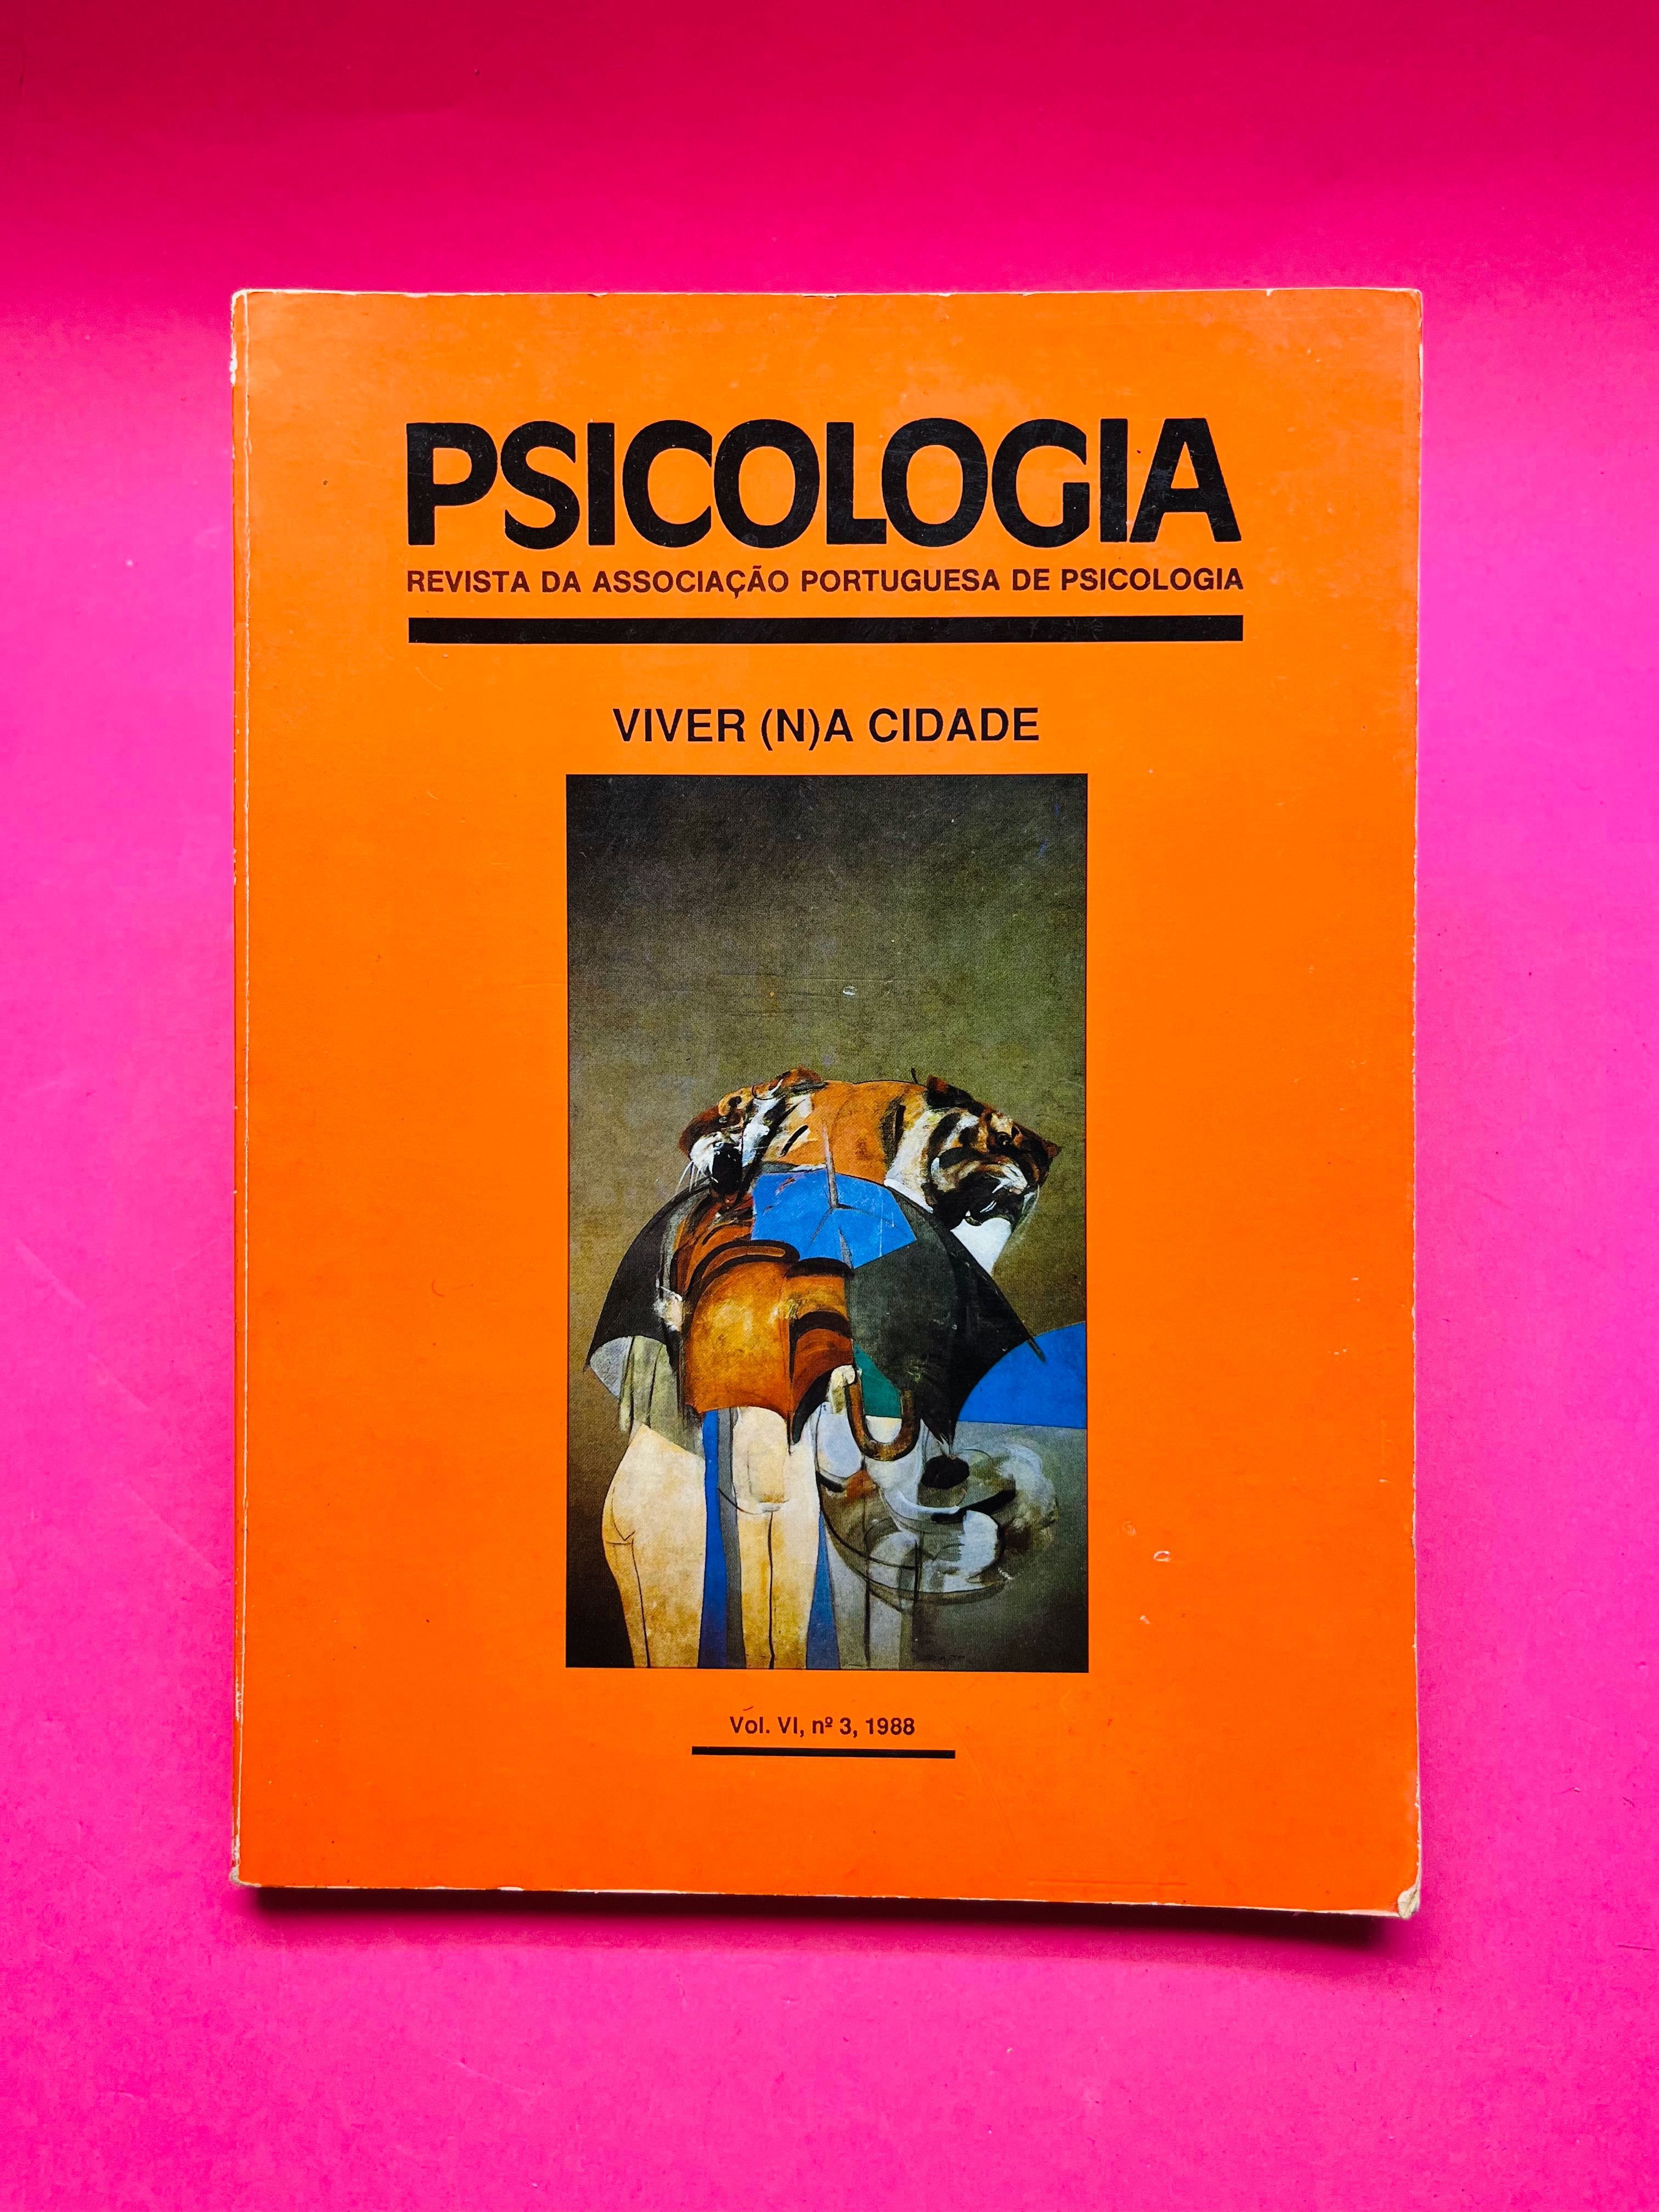 Revista Psicologia Vol. VI, Nº3, Ano 1988